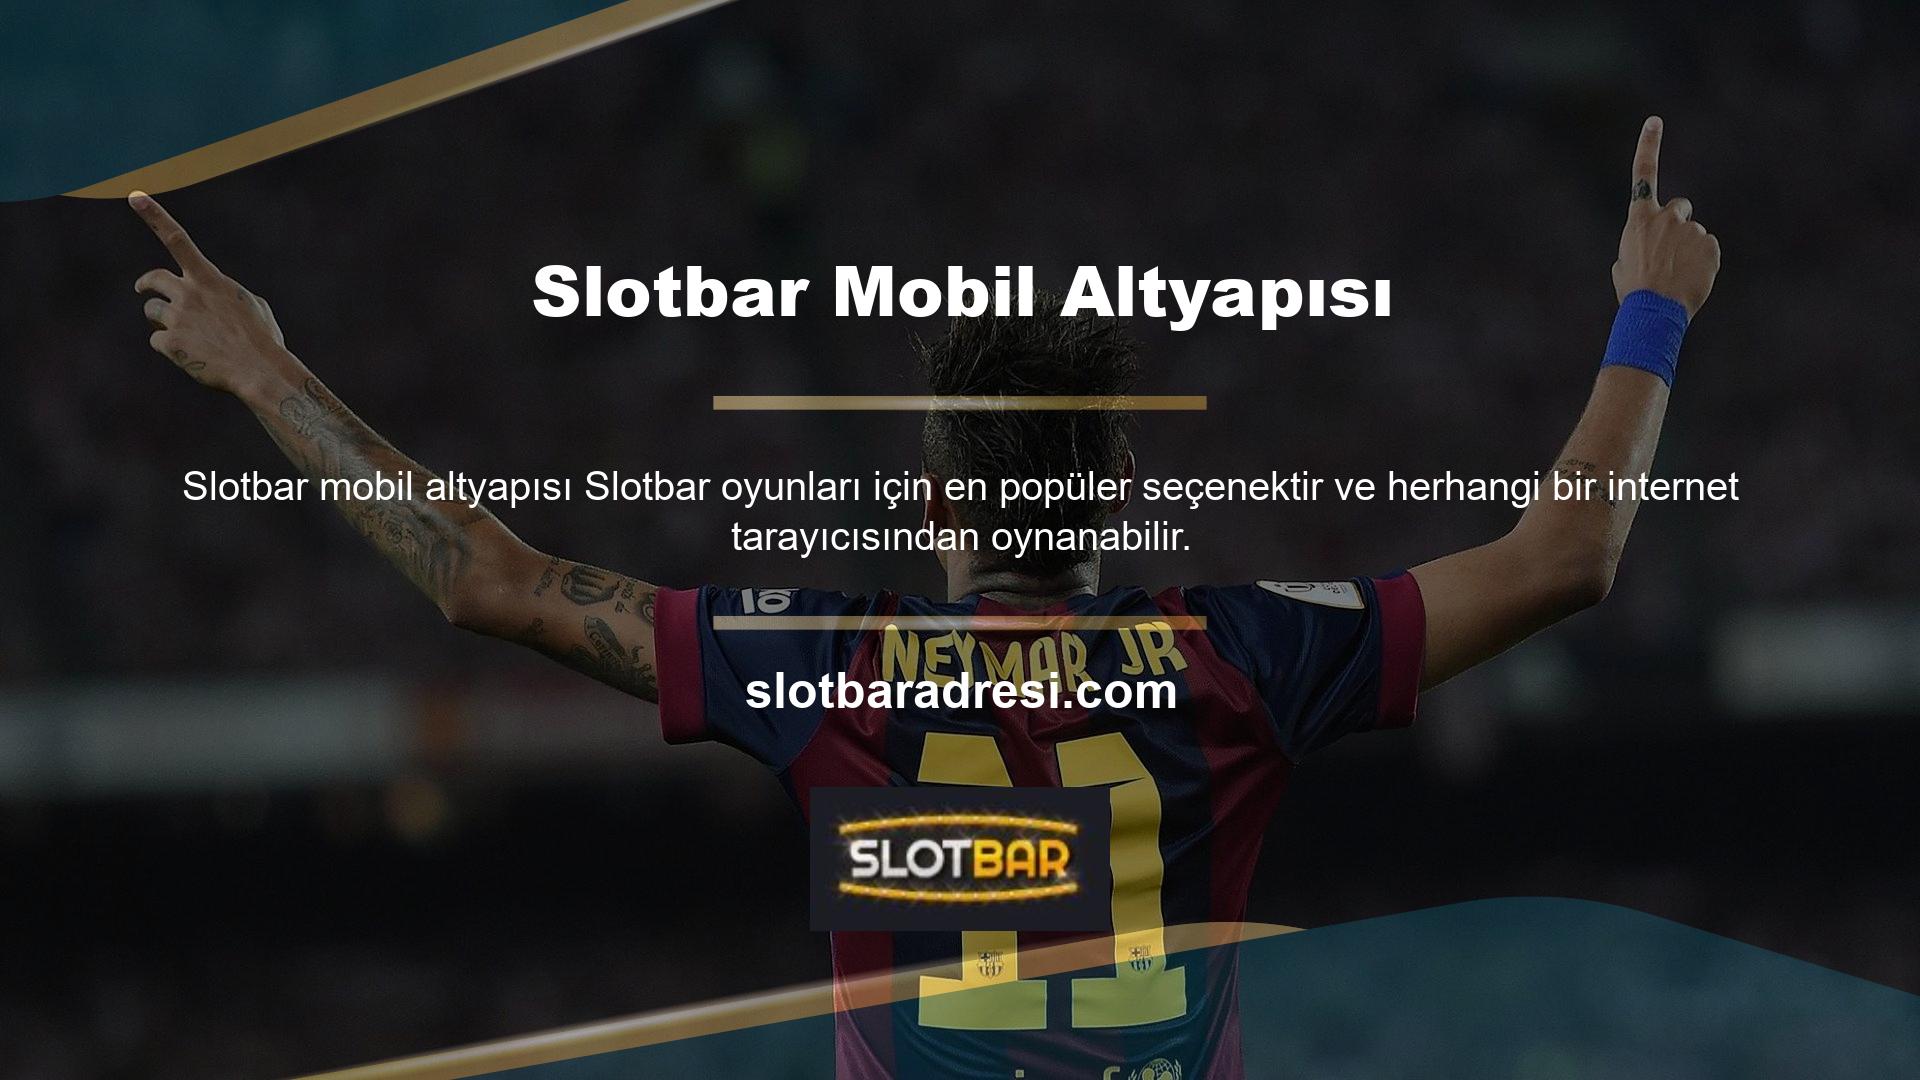 Mobil uygulamaların kullanımının artmasıyla birlikte Slotbar mobil uygulaması hayata geçirildi